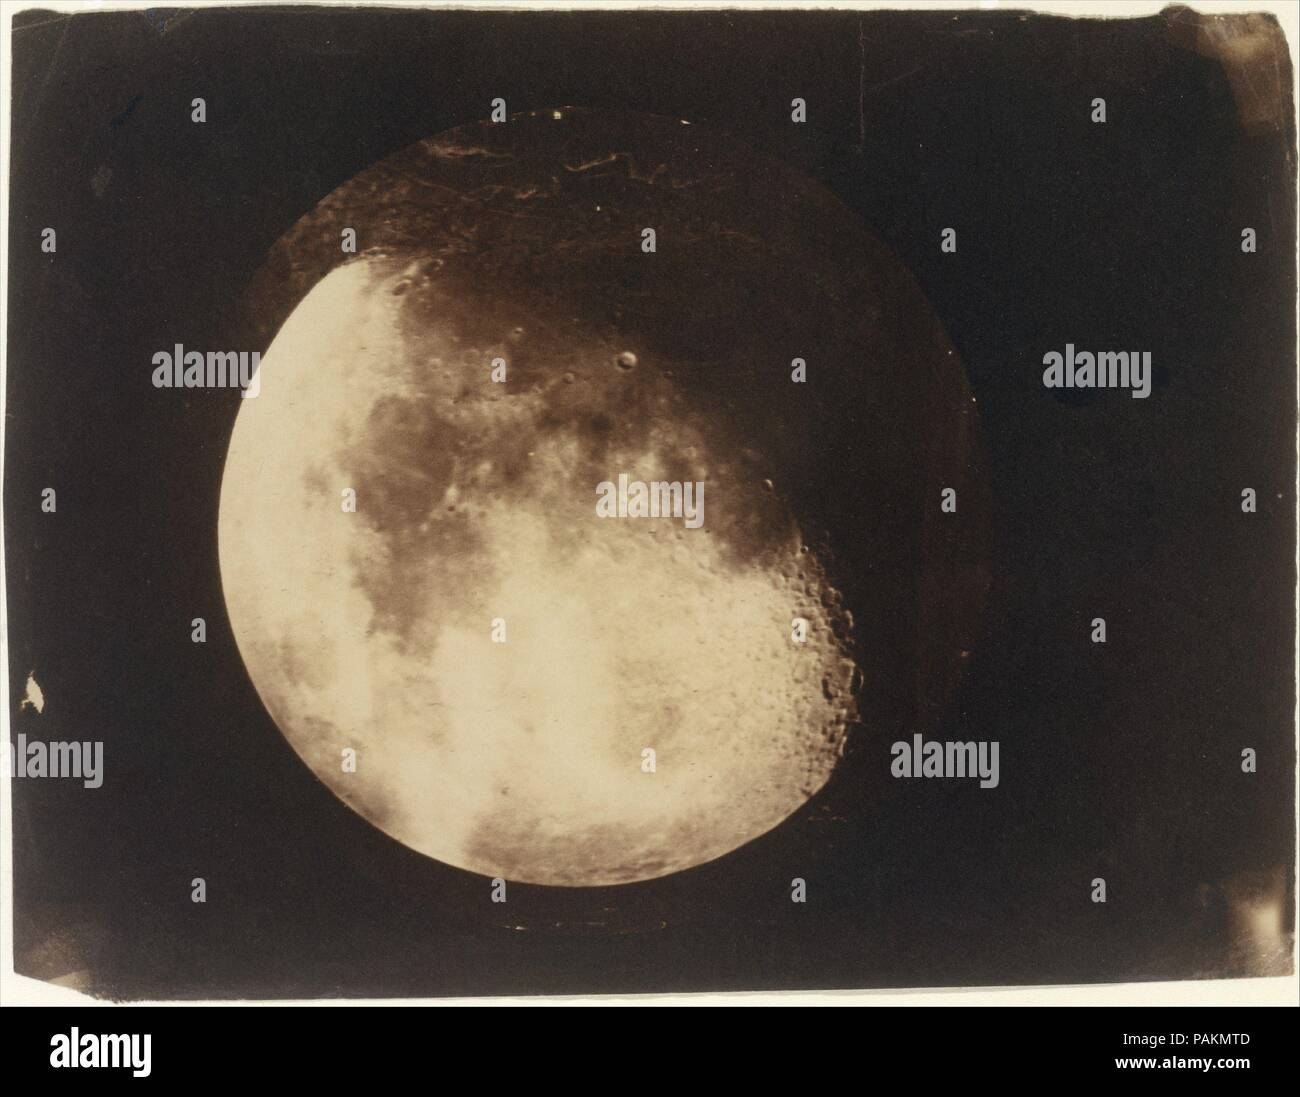 La Lune. Artiste : John Adams Whipple (Américain, 1822-1891) ; James Wallace Black (Américain, 1825-1896). Dimensions : 21 x 15,7 cm (8 1/4 x 6 3/16 in. ). Date : 1857-1860. En décembre 1849, John Whipple fait sa première photographie de la lune, un daguerréotype pris par le télescope à l'Observatoire de l'Université de Harvard à Cambridge. Bien qu'il n'a pas fait la première photographie lunaire en Amérique latine, en termes de précision et de l'esthétique Whipple a produit ce qu'ont été internationalement reconnu comme la plus sublime des photographies de la lune. Cette étude, réalisée avec son partenaire James noir, rappelle la maxime dans un Banque D'Images